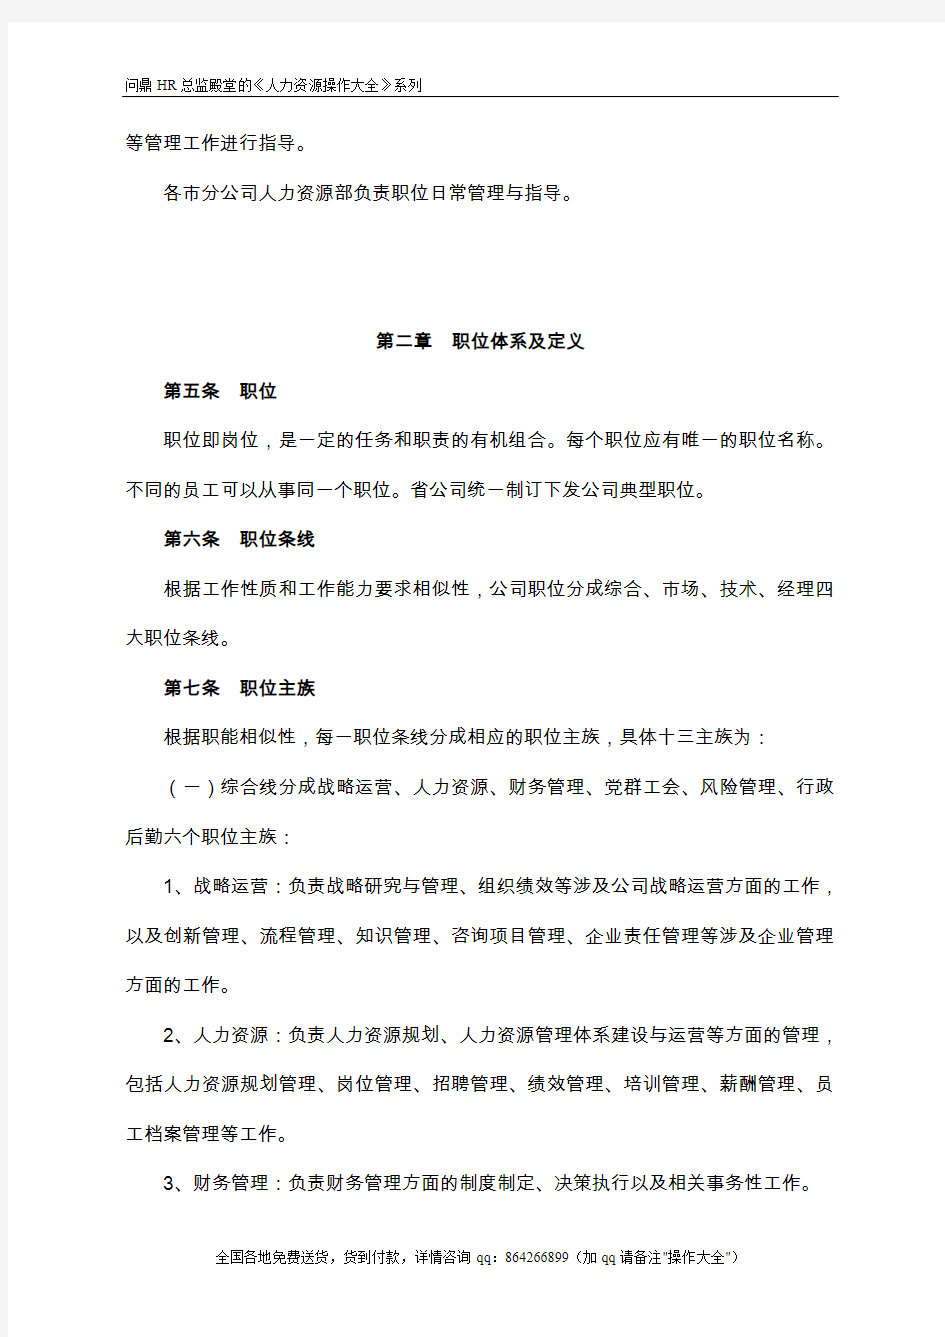 中国移动浙江公司公司职位职等管理办法-10页